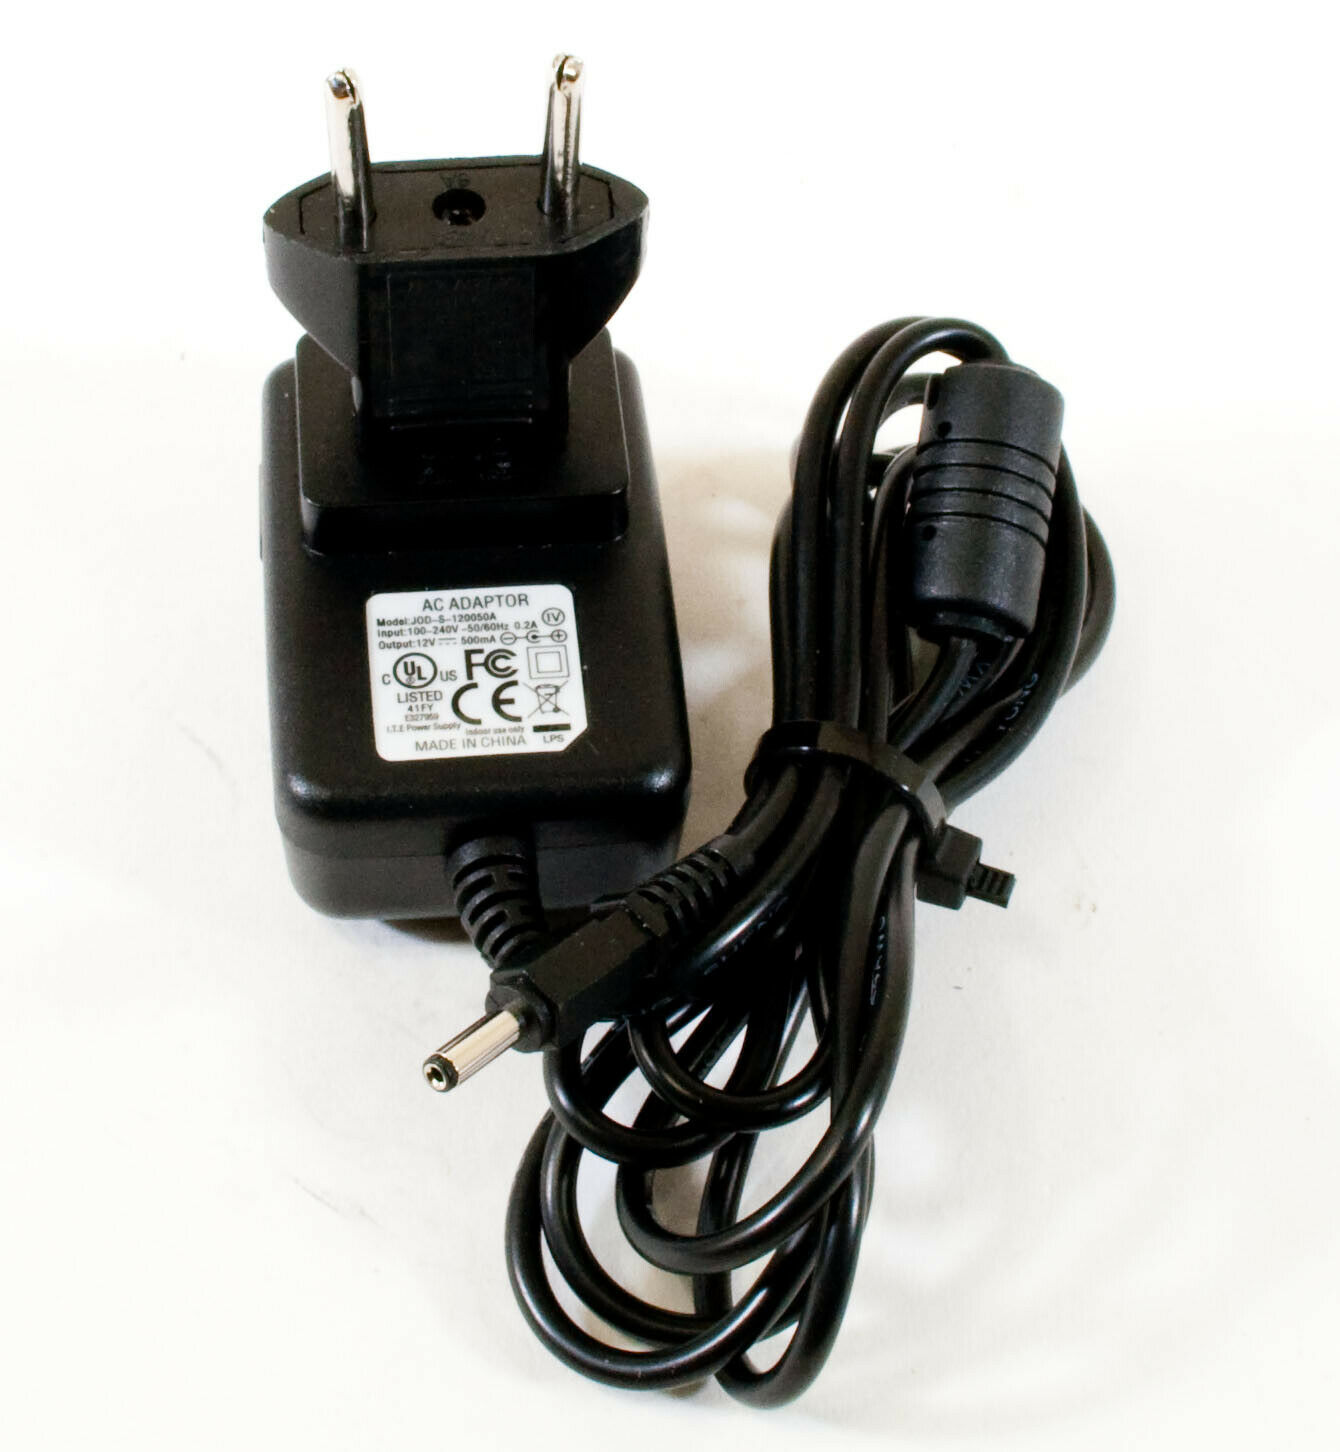 JOD-S-120050A AC Adapter 12V 500mA Original I.T.E. Power Supply Output Current: